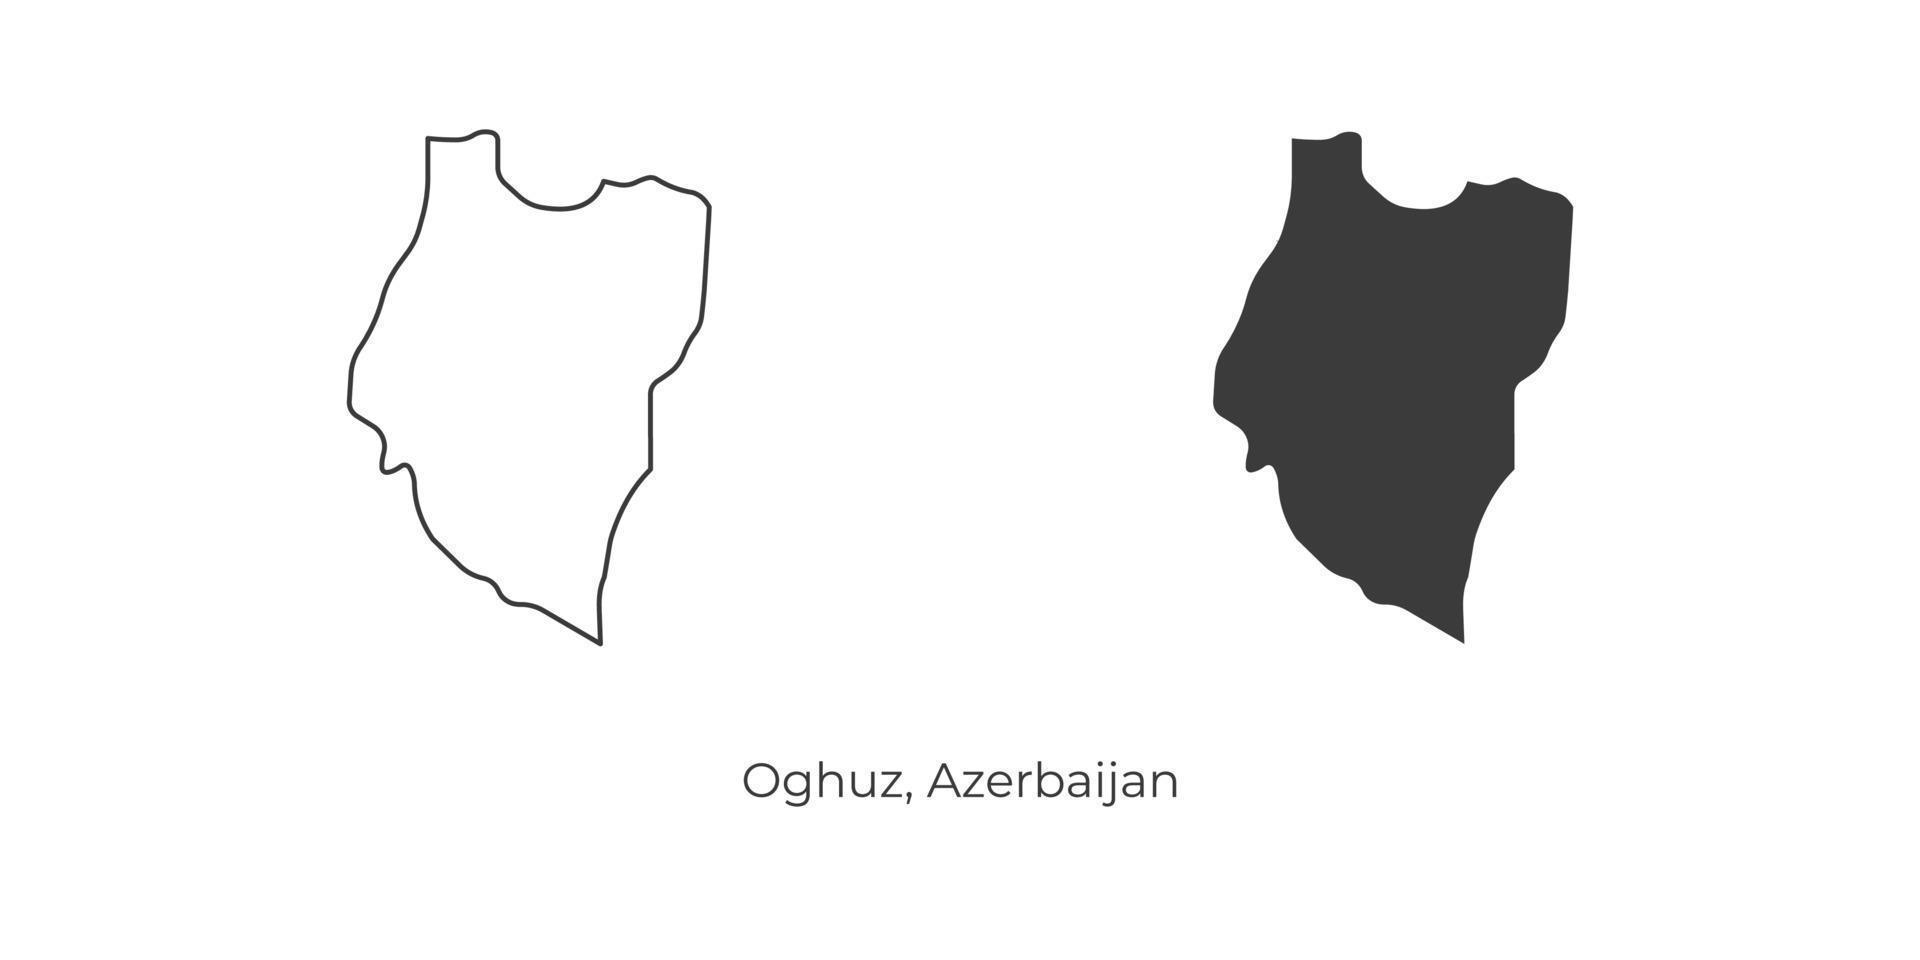 ilustração em vetor simples do mapa oghuz, azerbaijão.